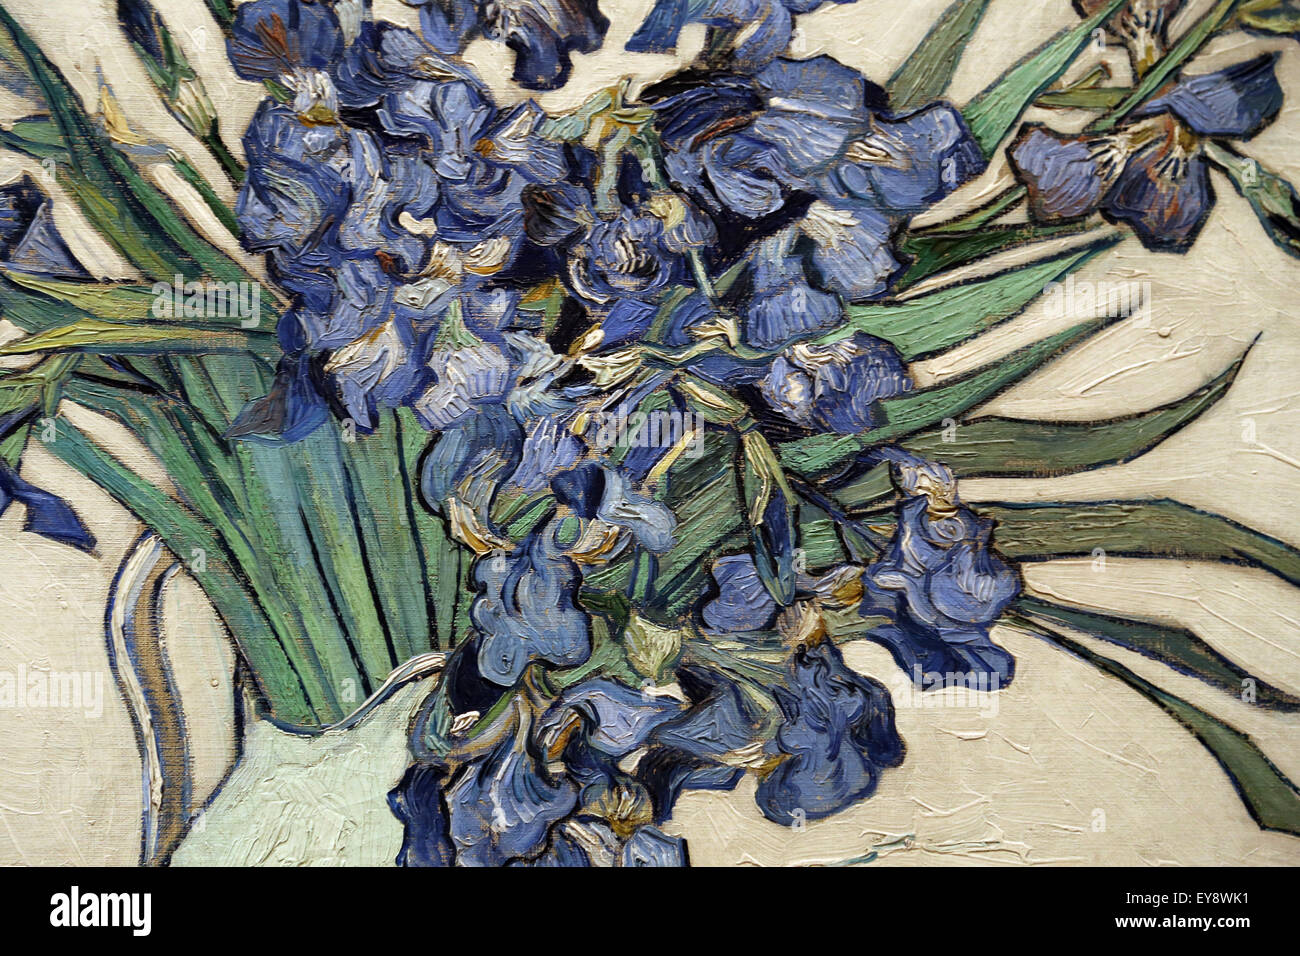 Vincent van Gogh (1853-1890). Peintre hollandais. Irise, 1890. Huile sur toile. Metropolitan Museum of Art de New York. USA. Banque D'Images